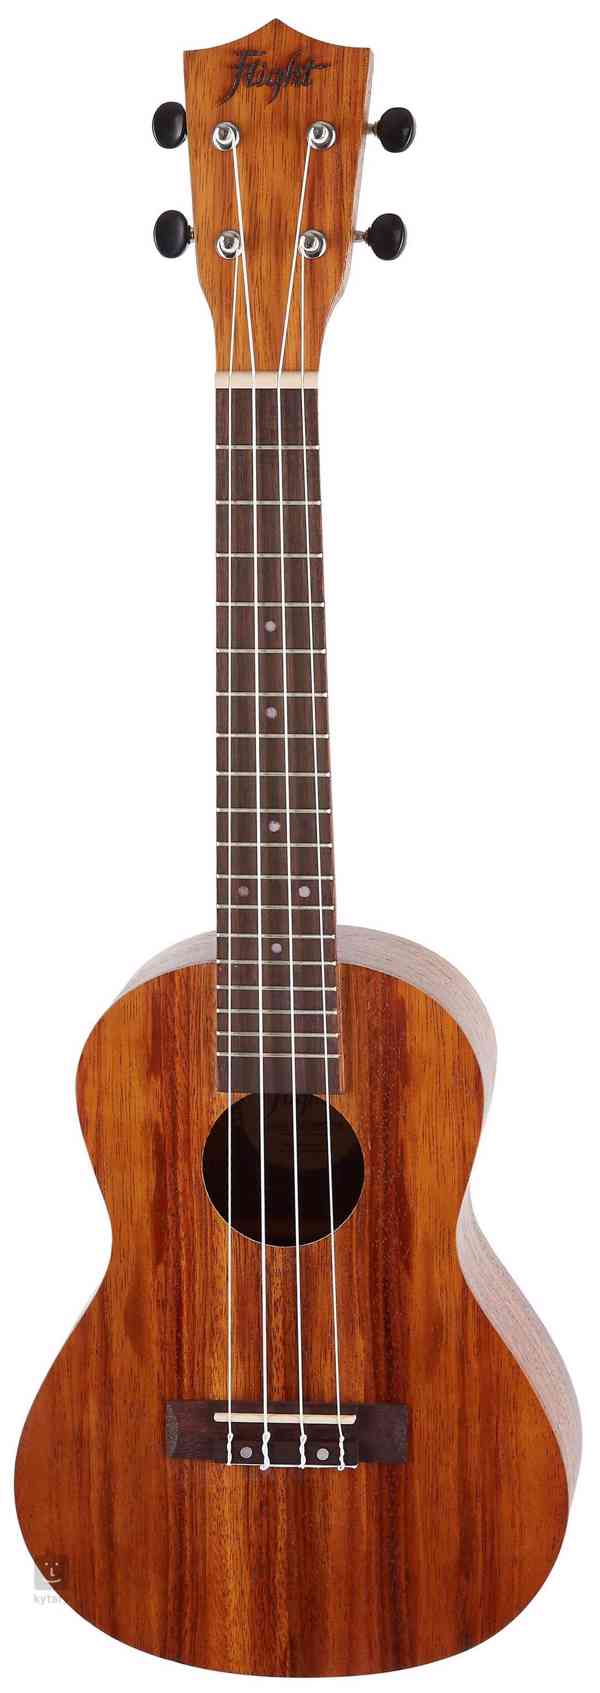 Luxusní akustické ukulele + pouzdro Zdarma + 5 různých knih - foto 3